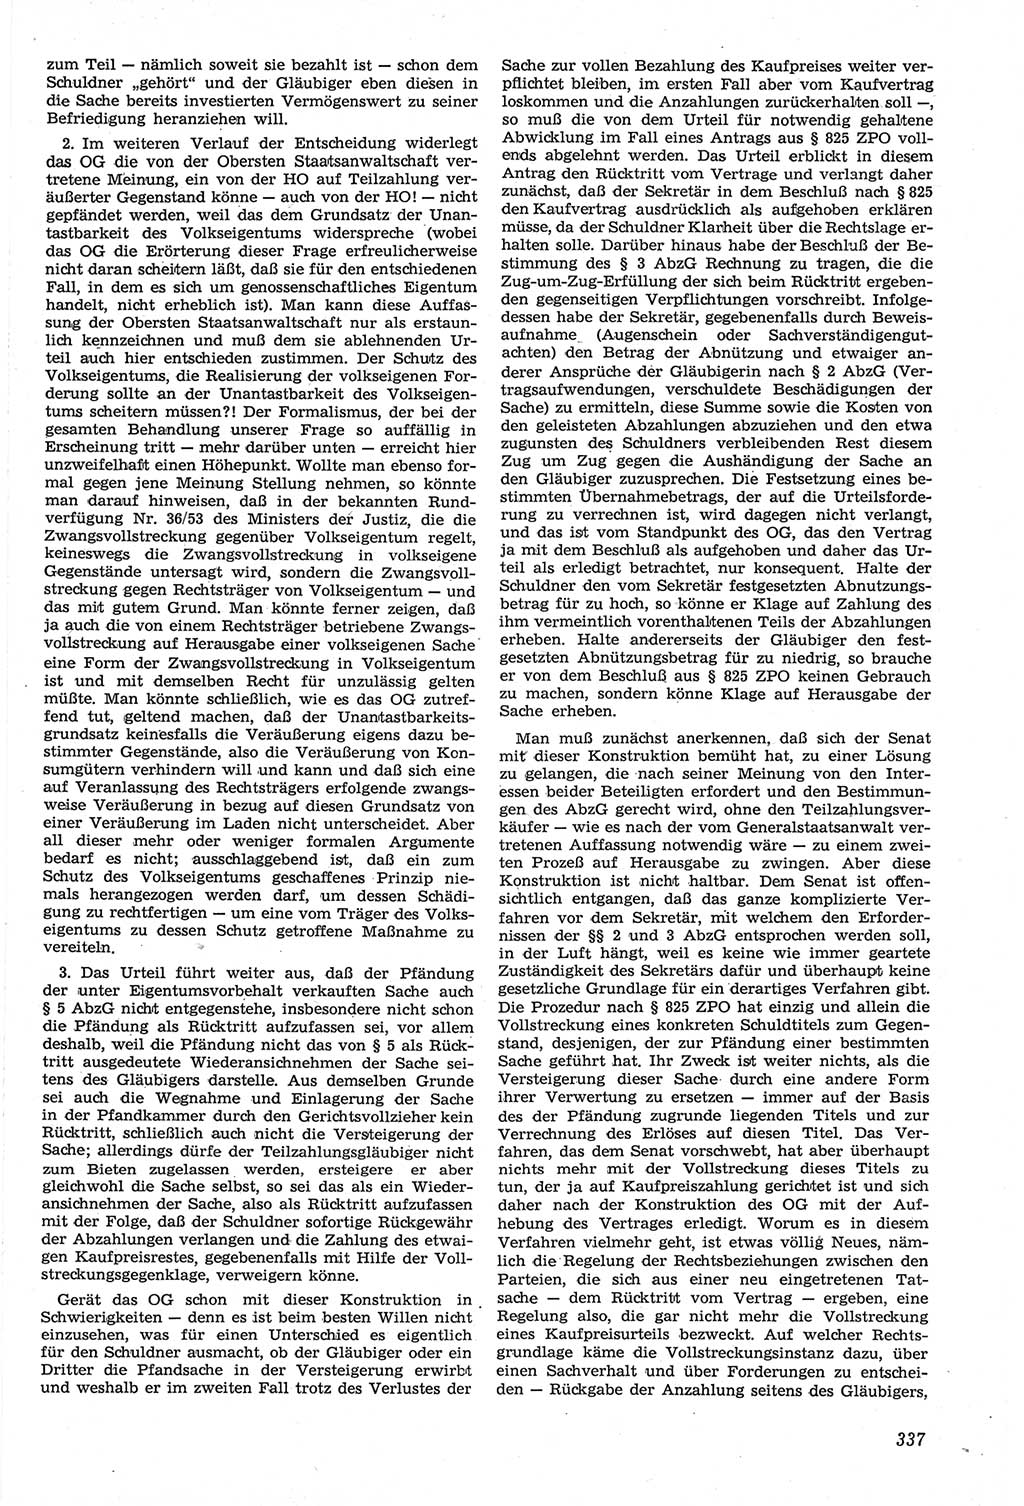 Neue Justiz (NJ), Zeitschrift für Recht und Rechtswissenschaft [Deutsche Demokratische Republik (DDR)], 14. Jahrgang 1960, Seite 337 (NJ DDR 1960, S. 337)